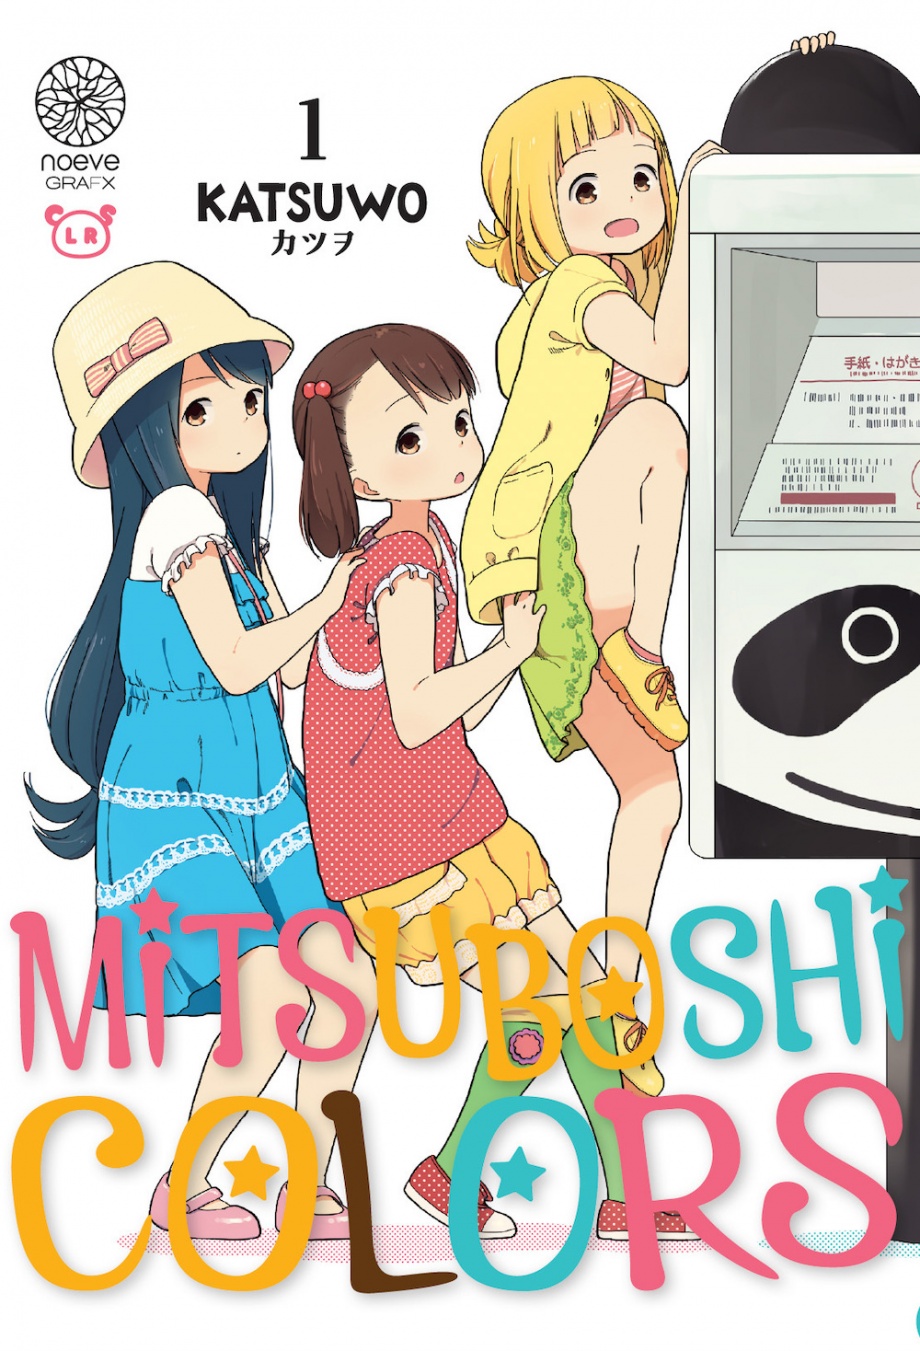 Couverture du livre "Mitsuboshi Colors"